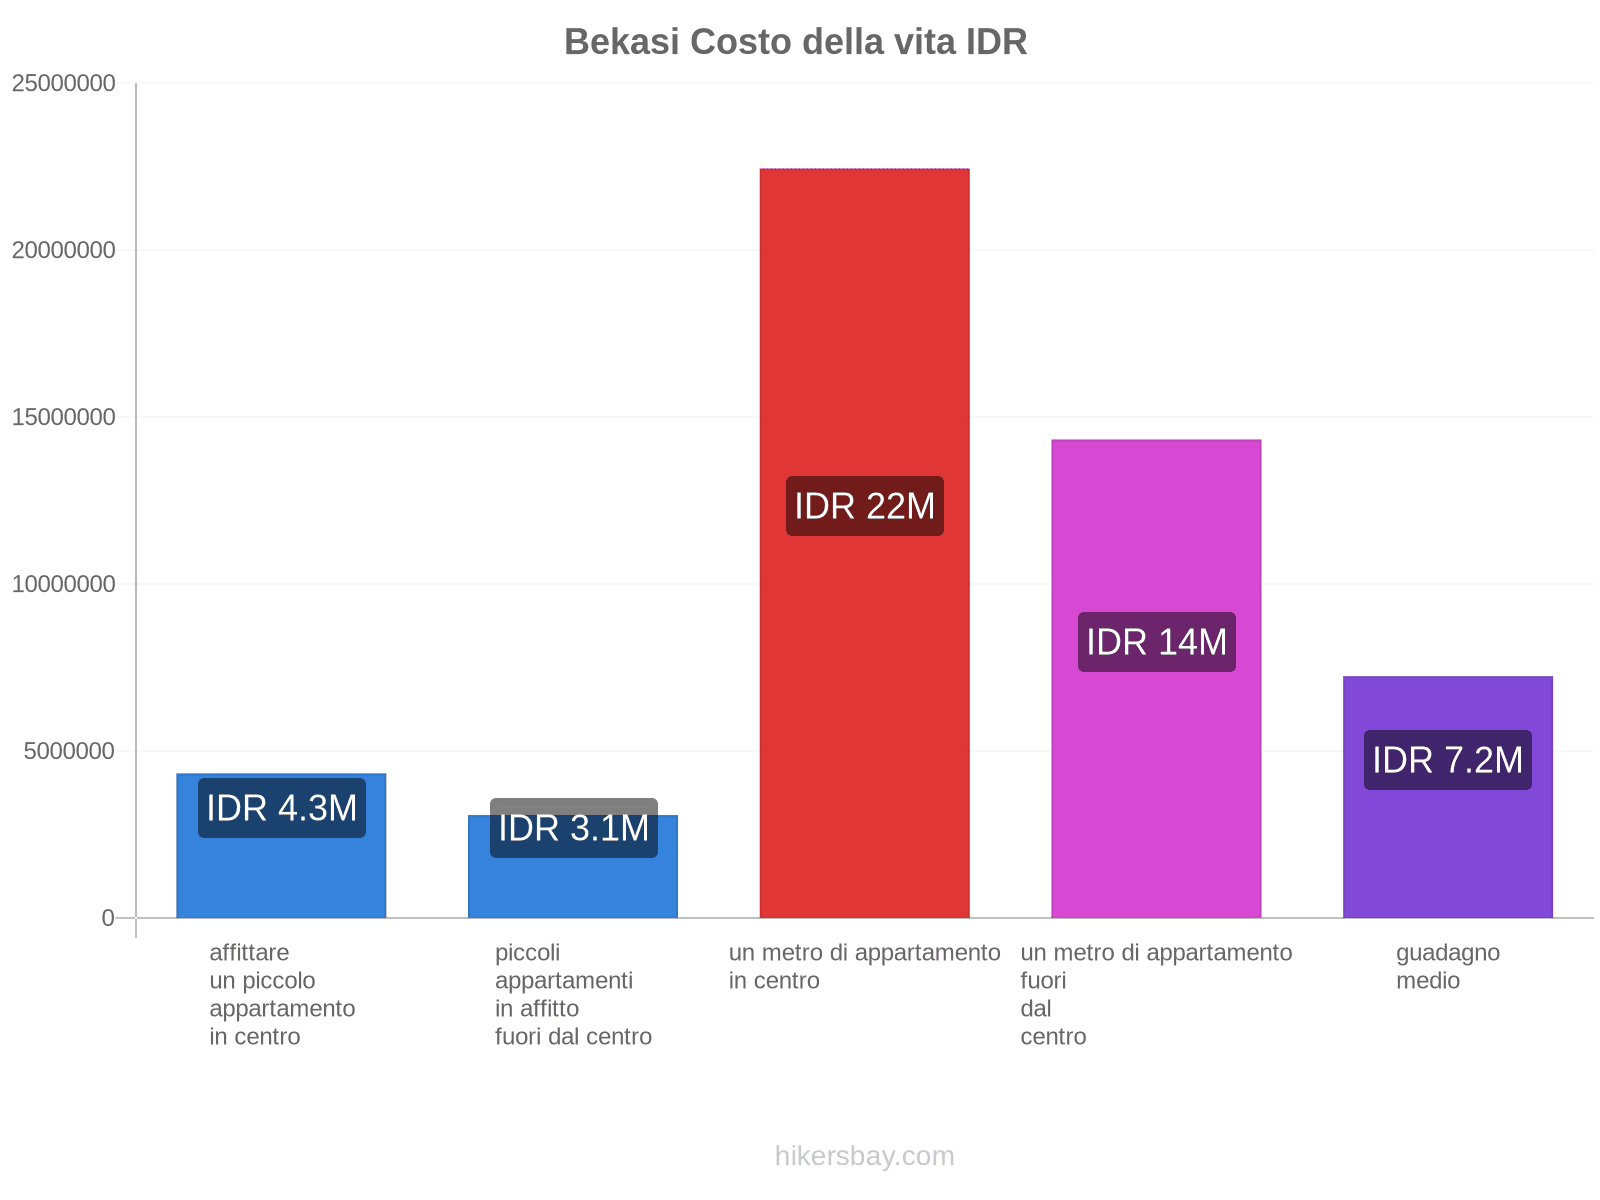 Bekasi costo della vita hikersbay.com